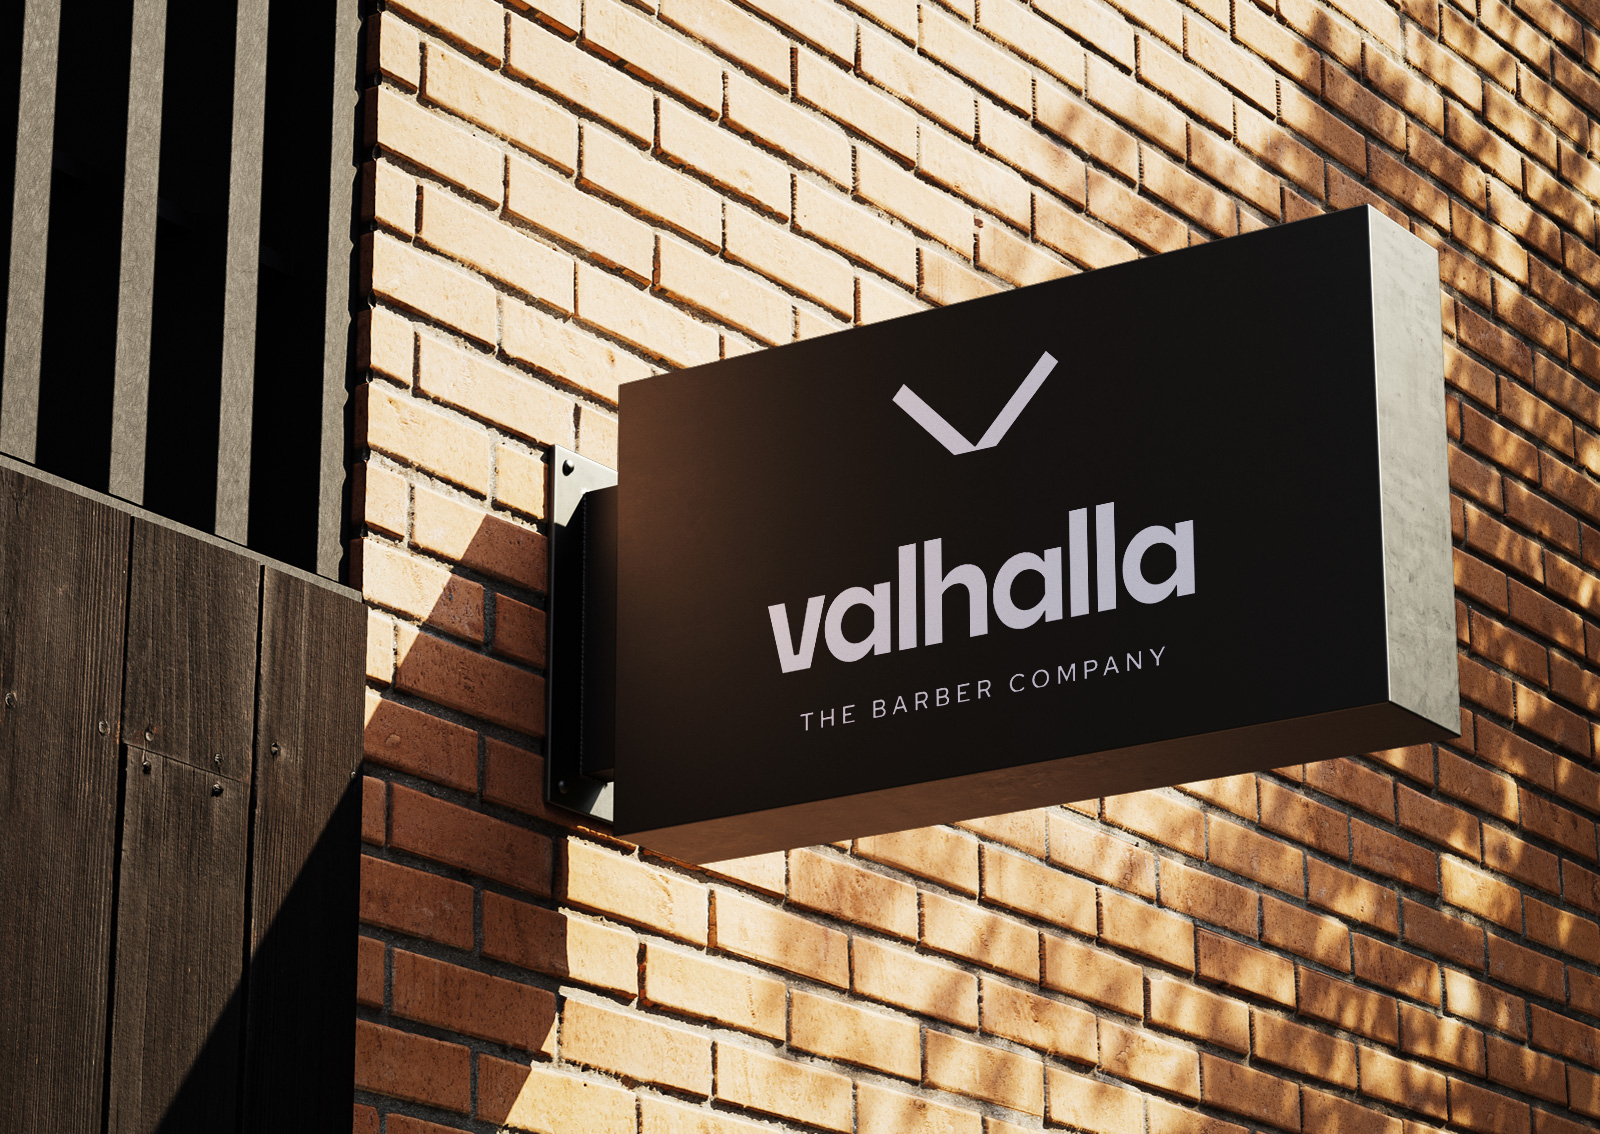 Sautter Werbung & Design Werbeagentur Rems-Murr-Kreis, Projekt: Valhalla The Barber Company – Branding, Packaging Design und Print